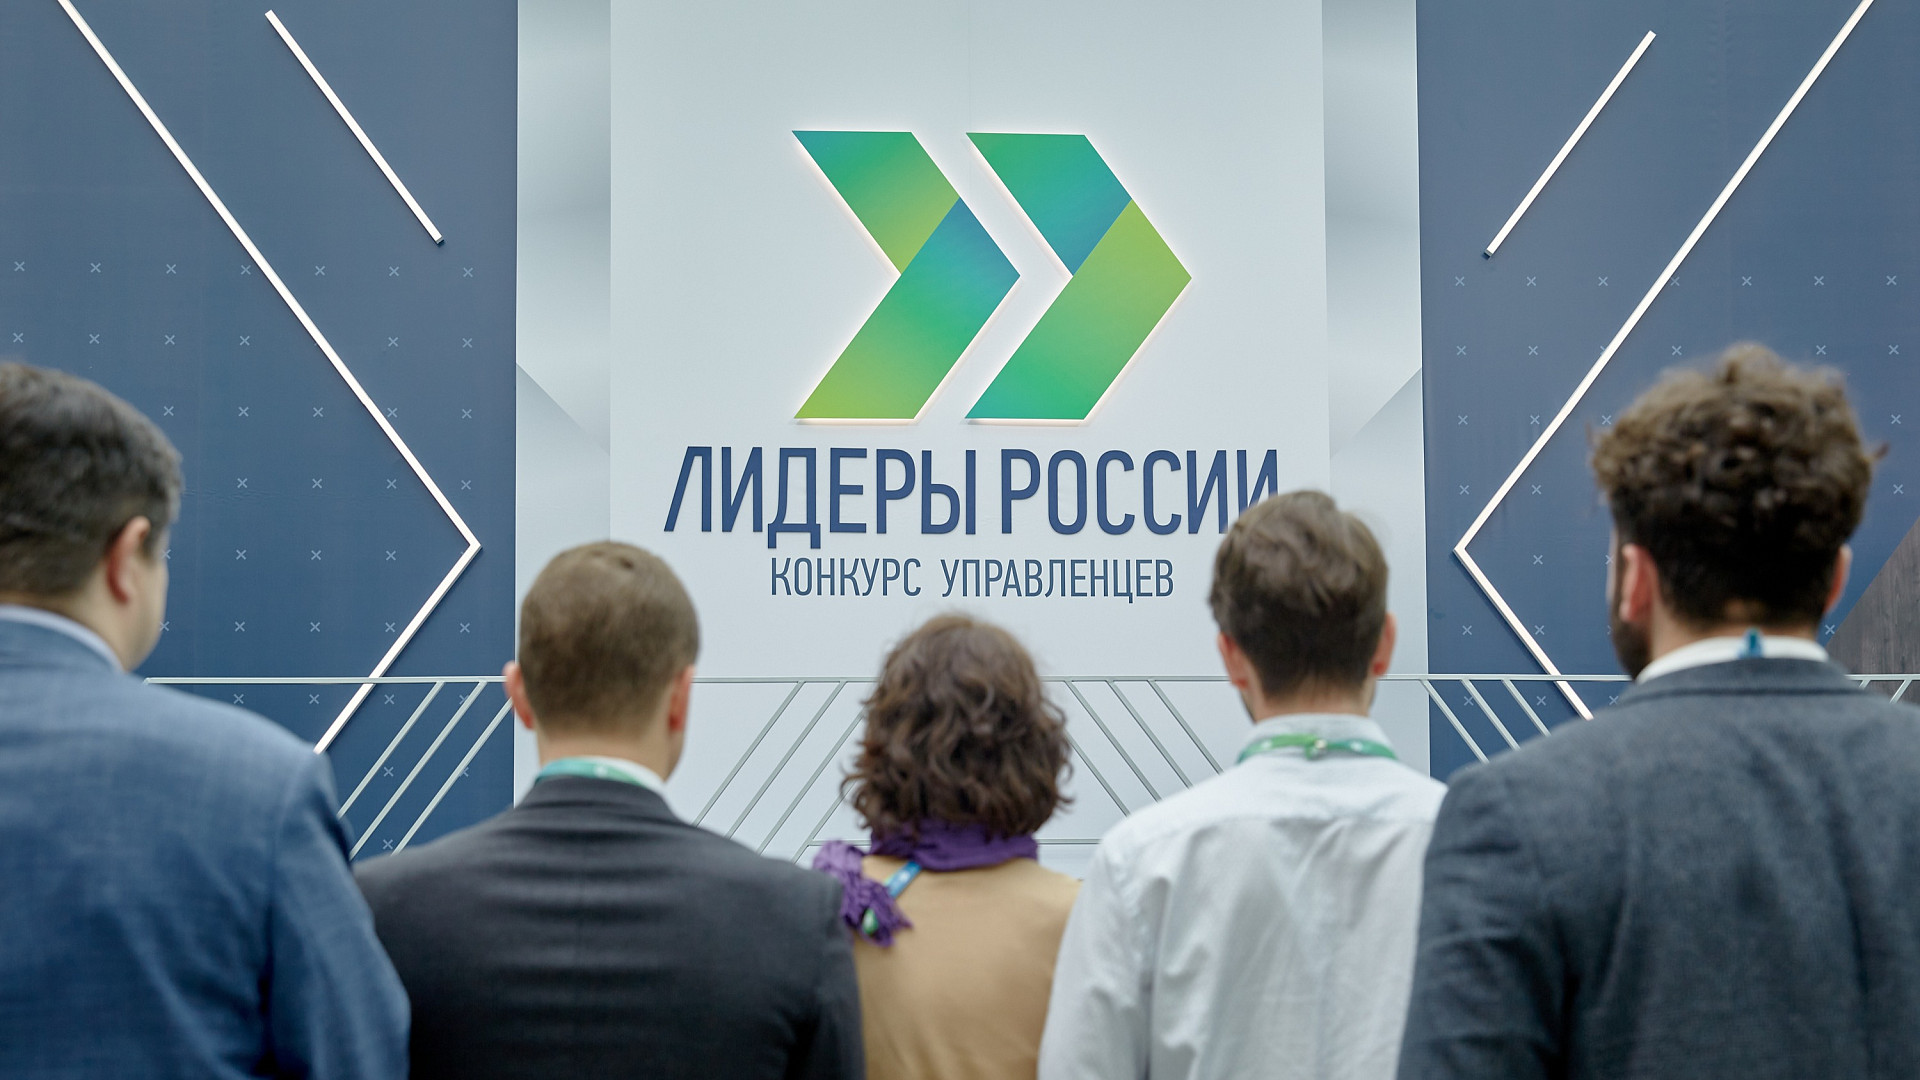 Открыт прием заявок на конкурс управленцев «Лидеры России»